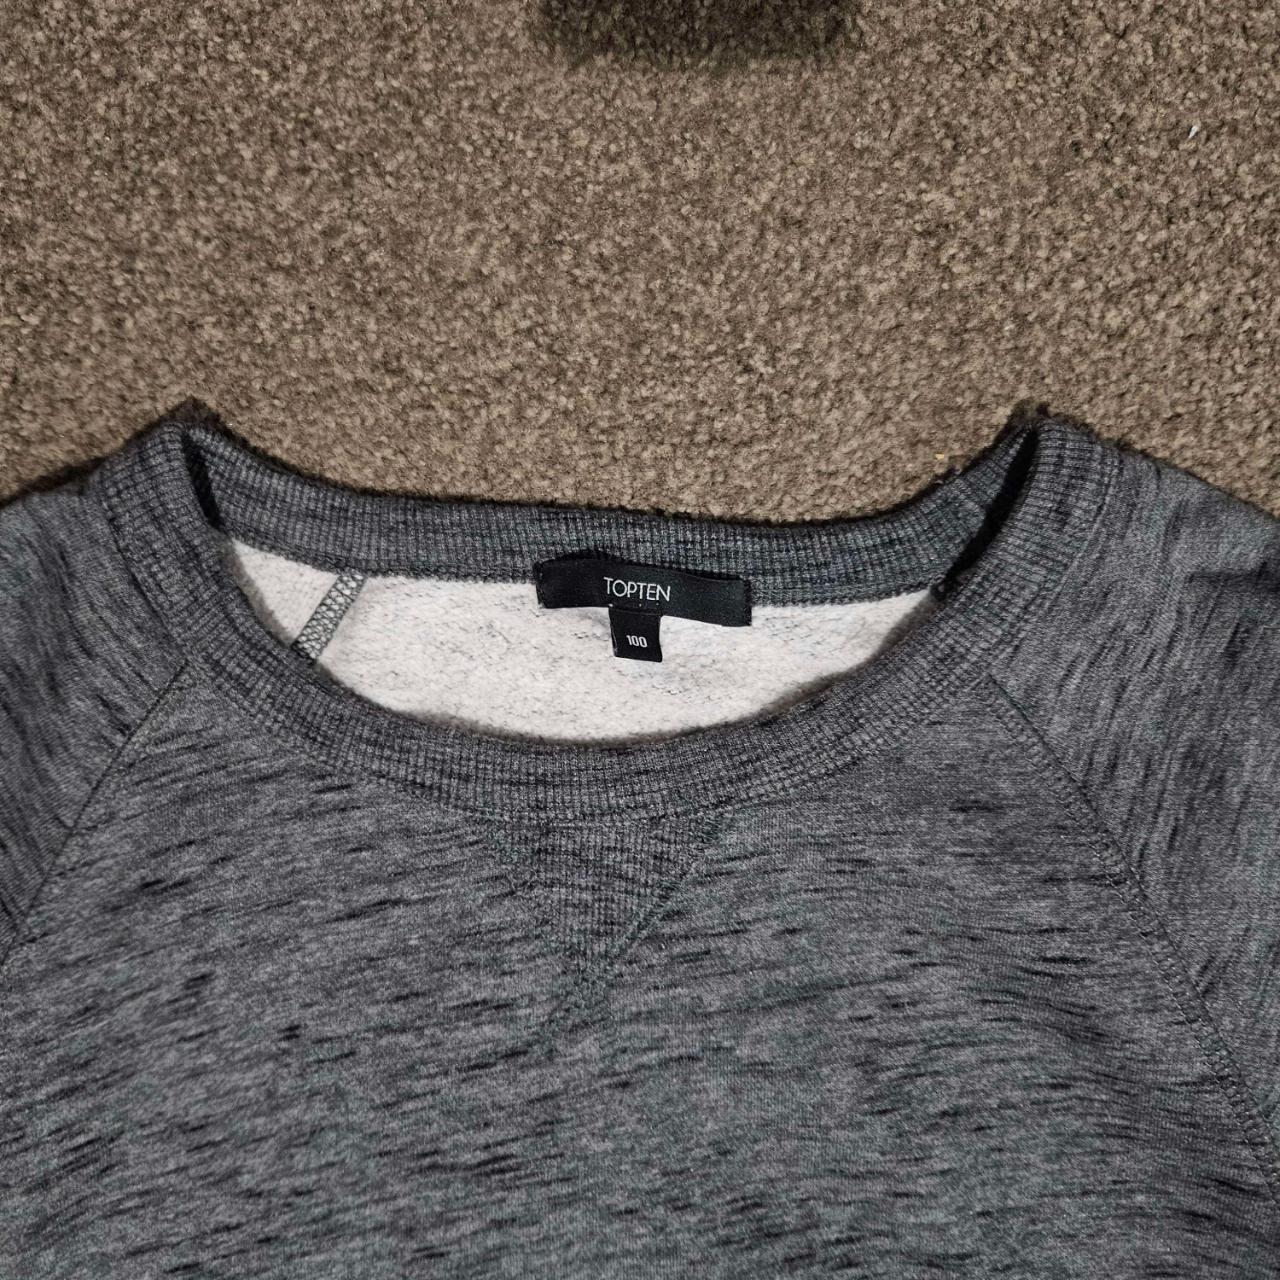 Topten Grey Sweater Korean Size 100 = Men's M... - Depop